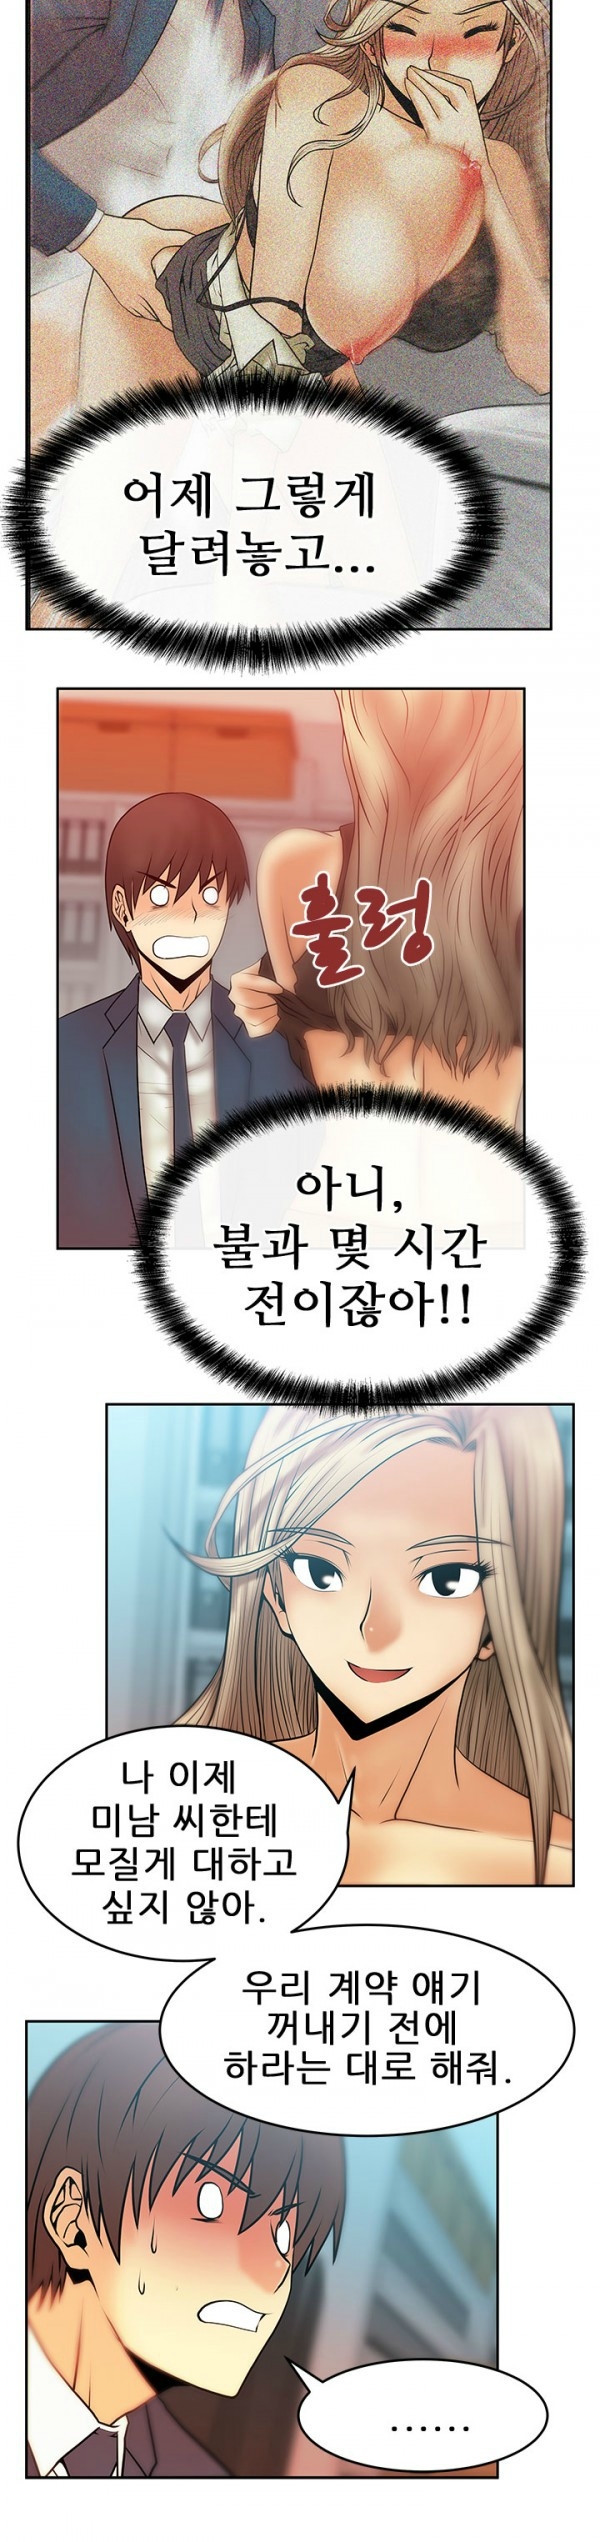 [Minu Mindu] Office Lady Vol. 1 [Korean] 159